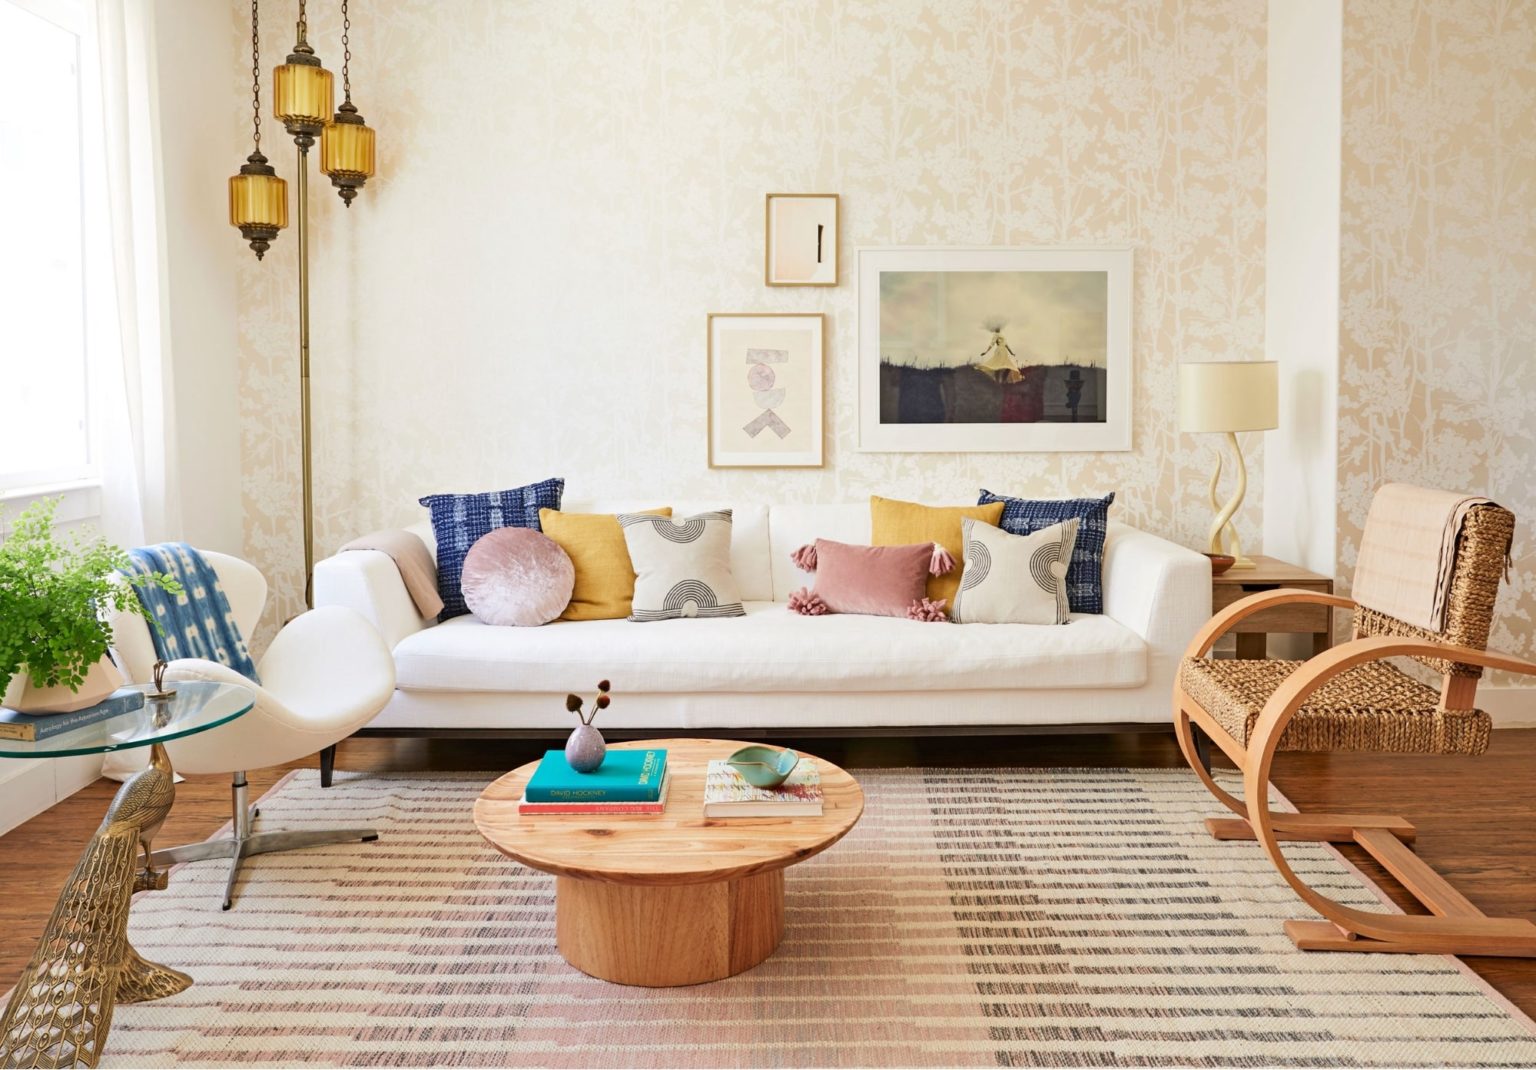 hình ảnh phòng khách phong cách Bohemian với sofa màu trắng, bàn trà tròn, ghế mây nhẹ nhàng, đèn thảm màu vàng ấm áp